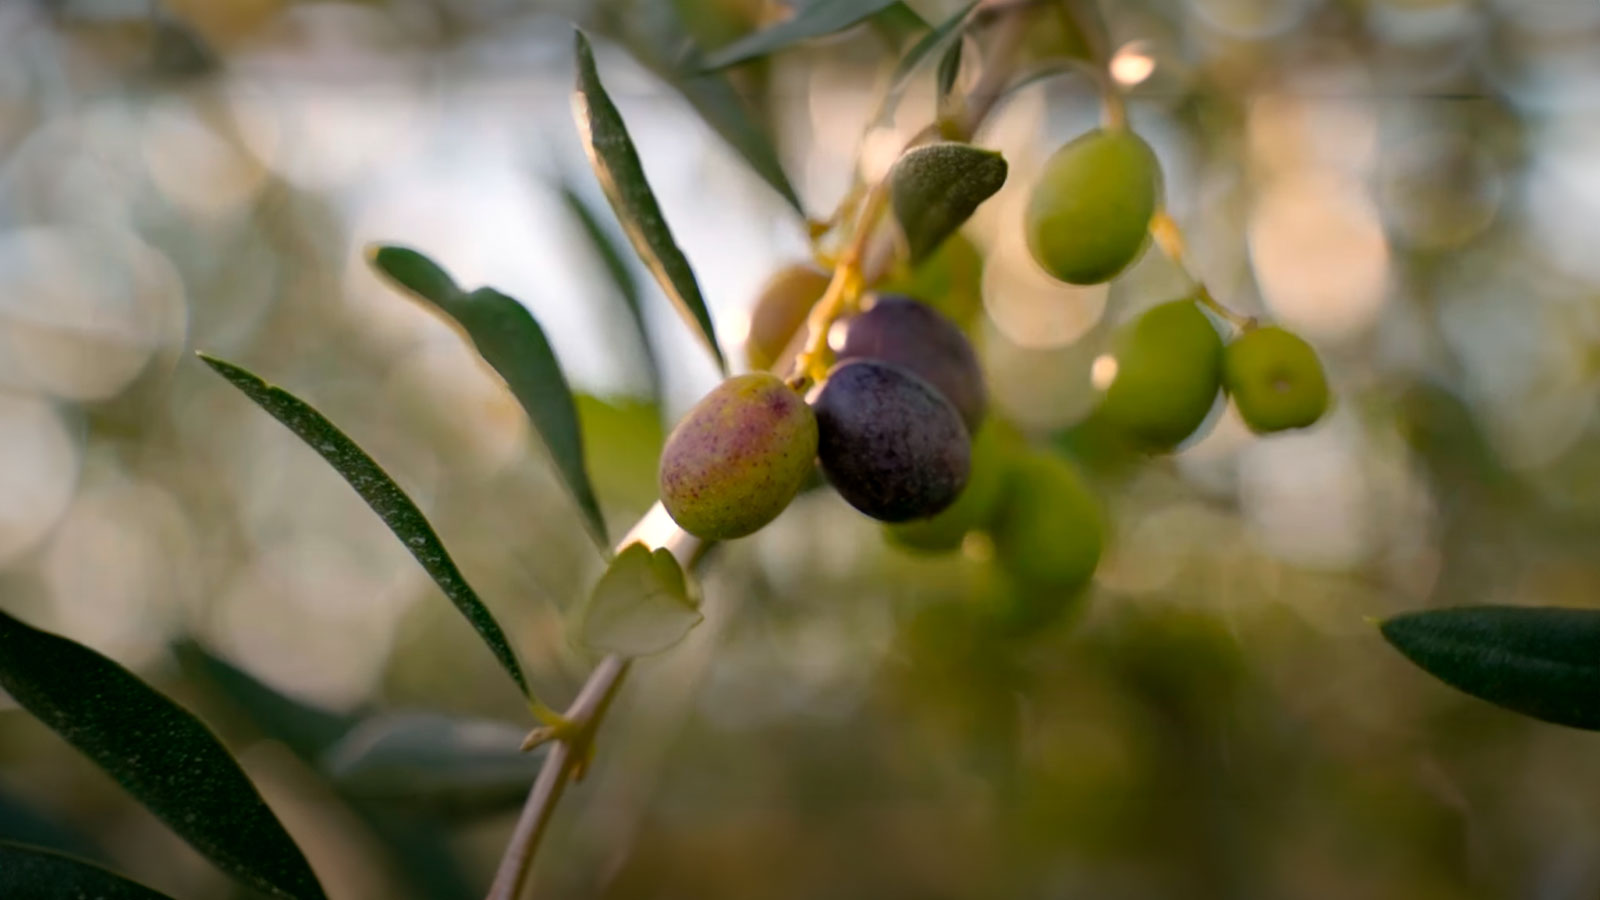 Ford produz peças com resíduos de oliveira e biocompostos